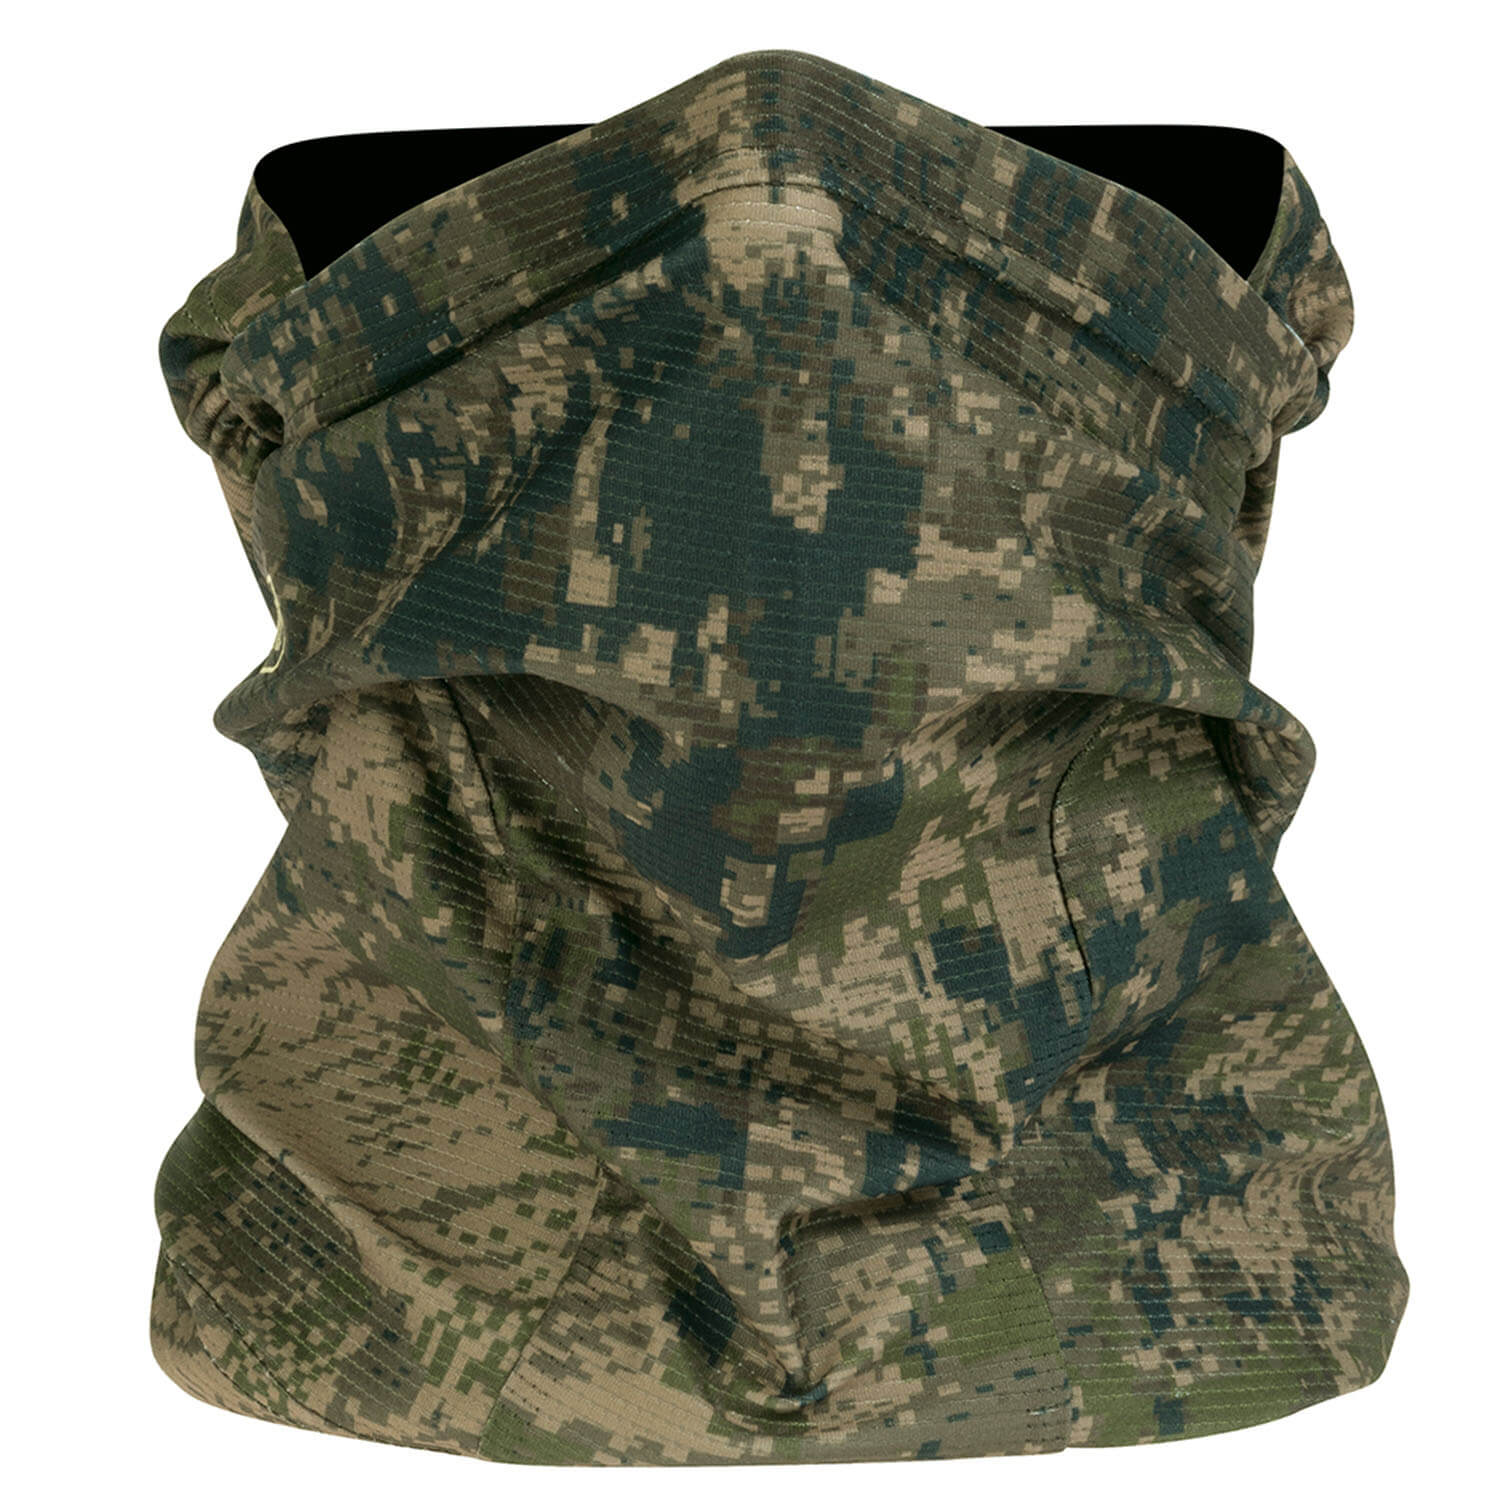  Hart Camouflagemasker Ural-FM